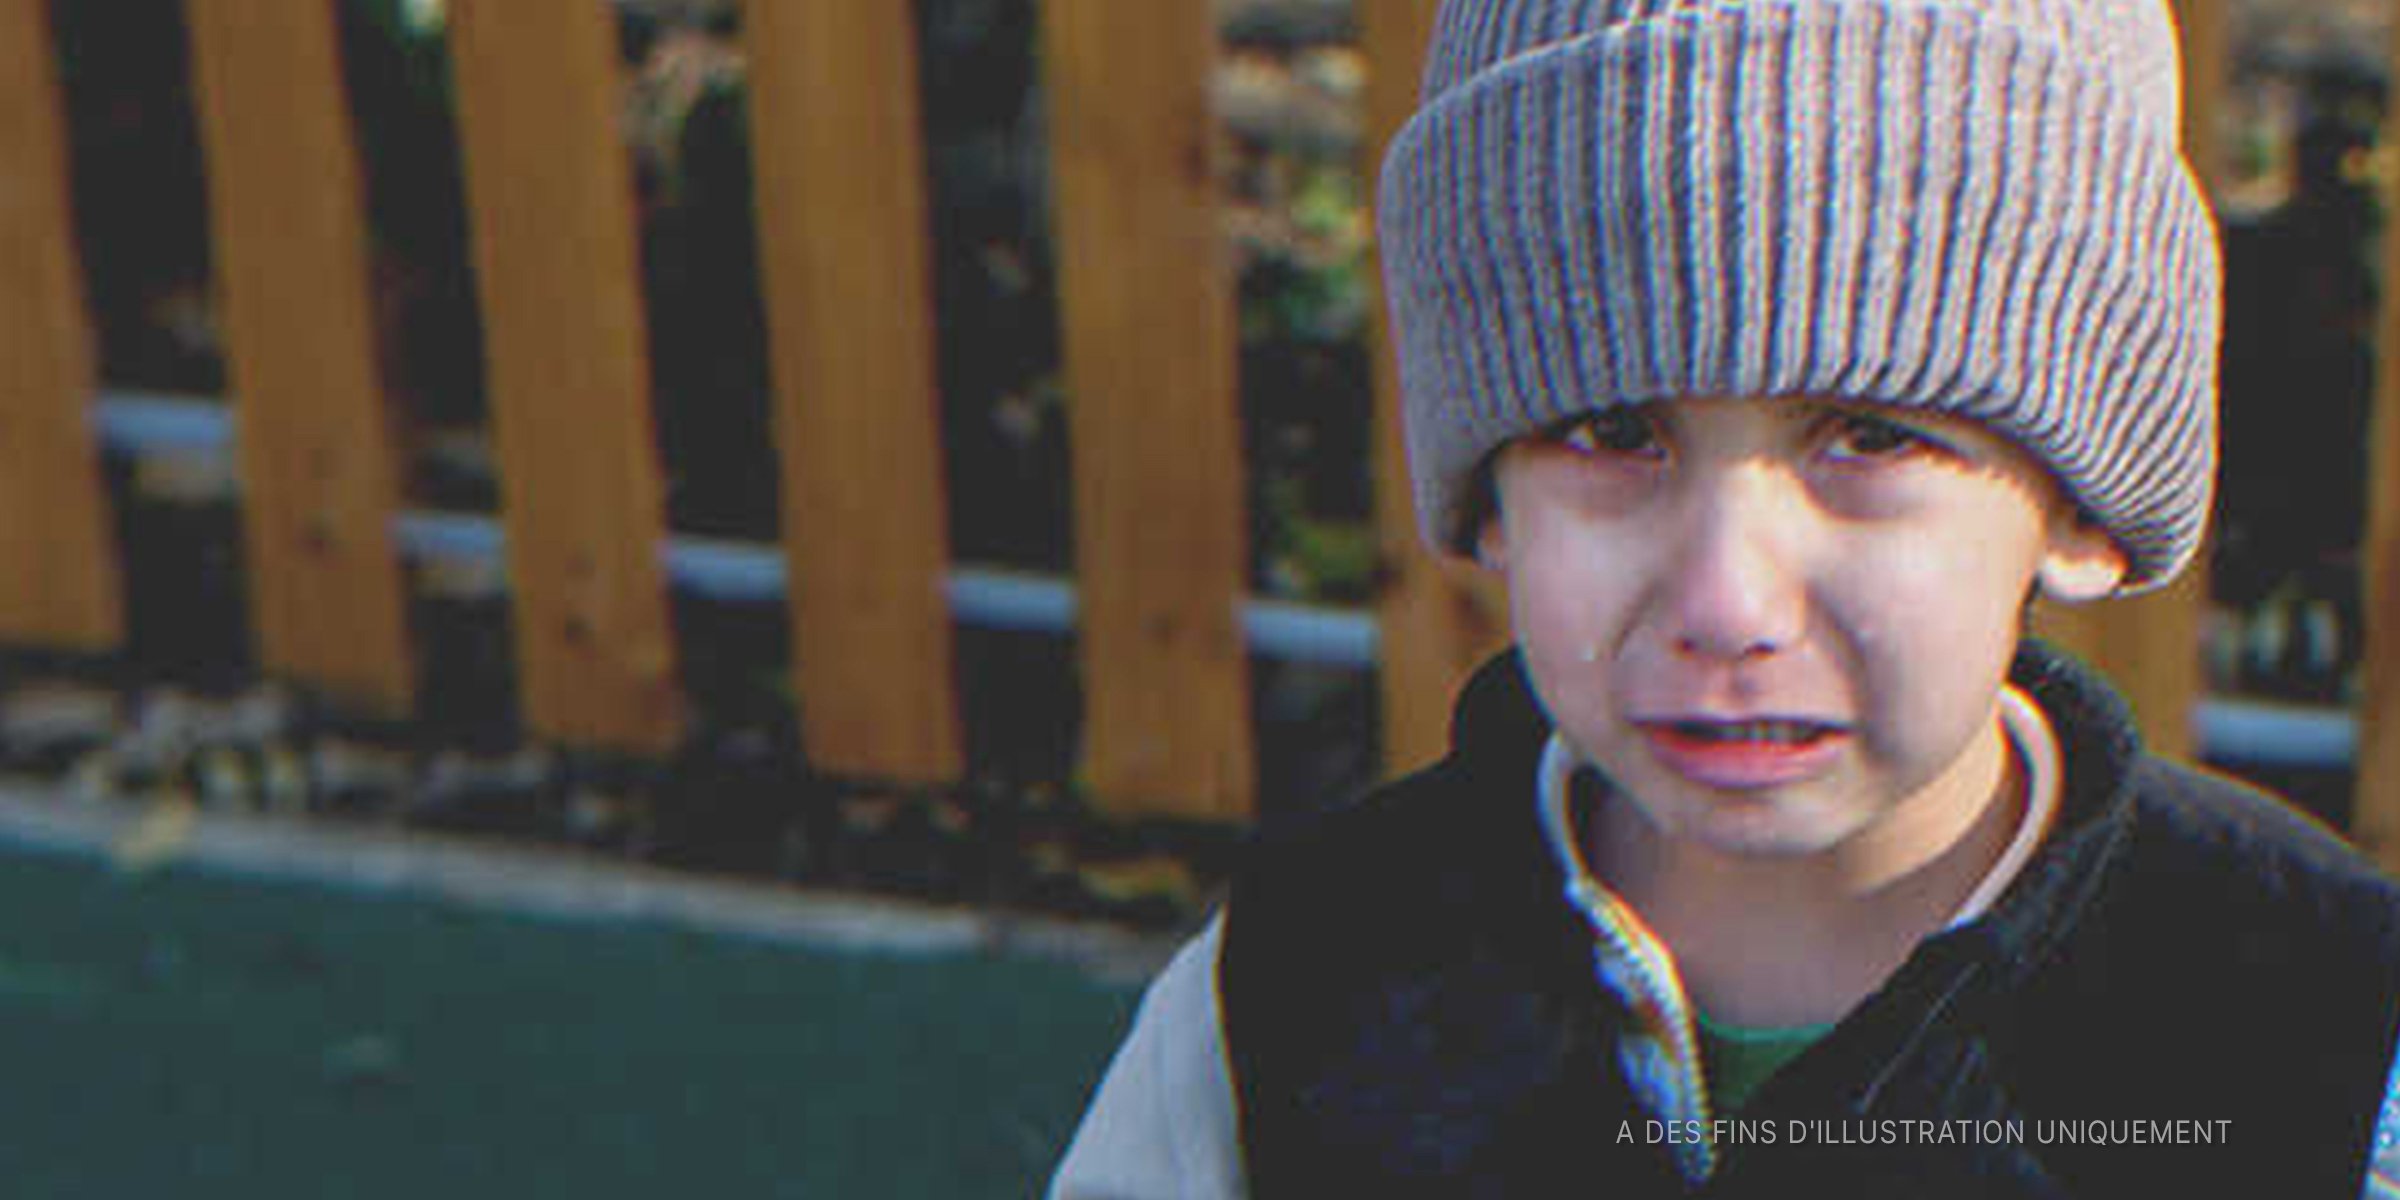 Un enfant entrain de pleurer | Photo : Shutterstock